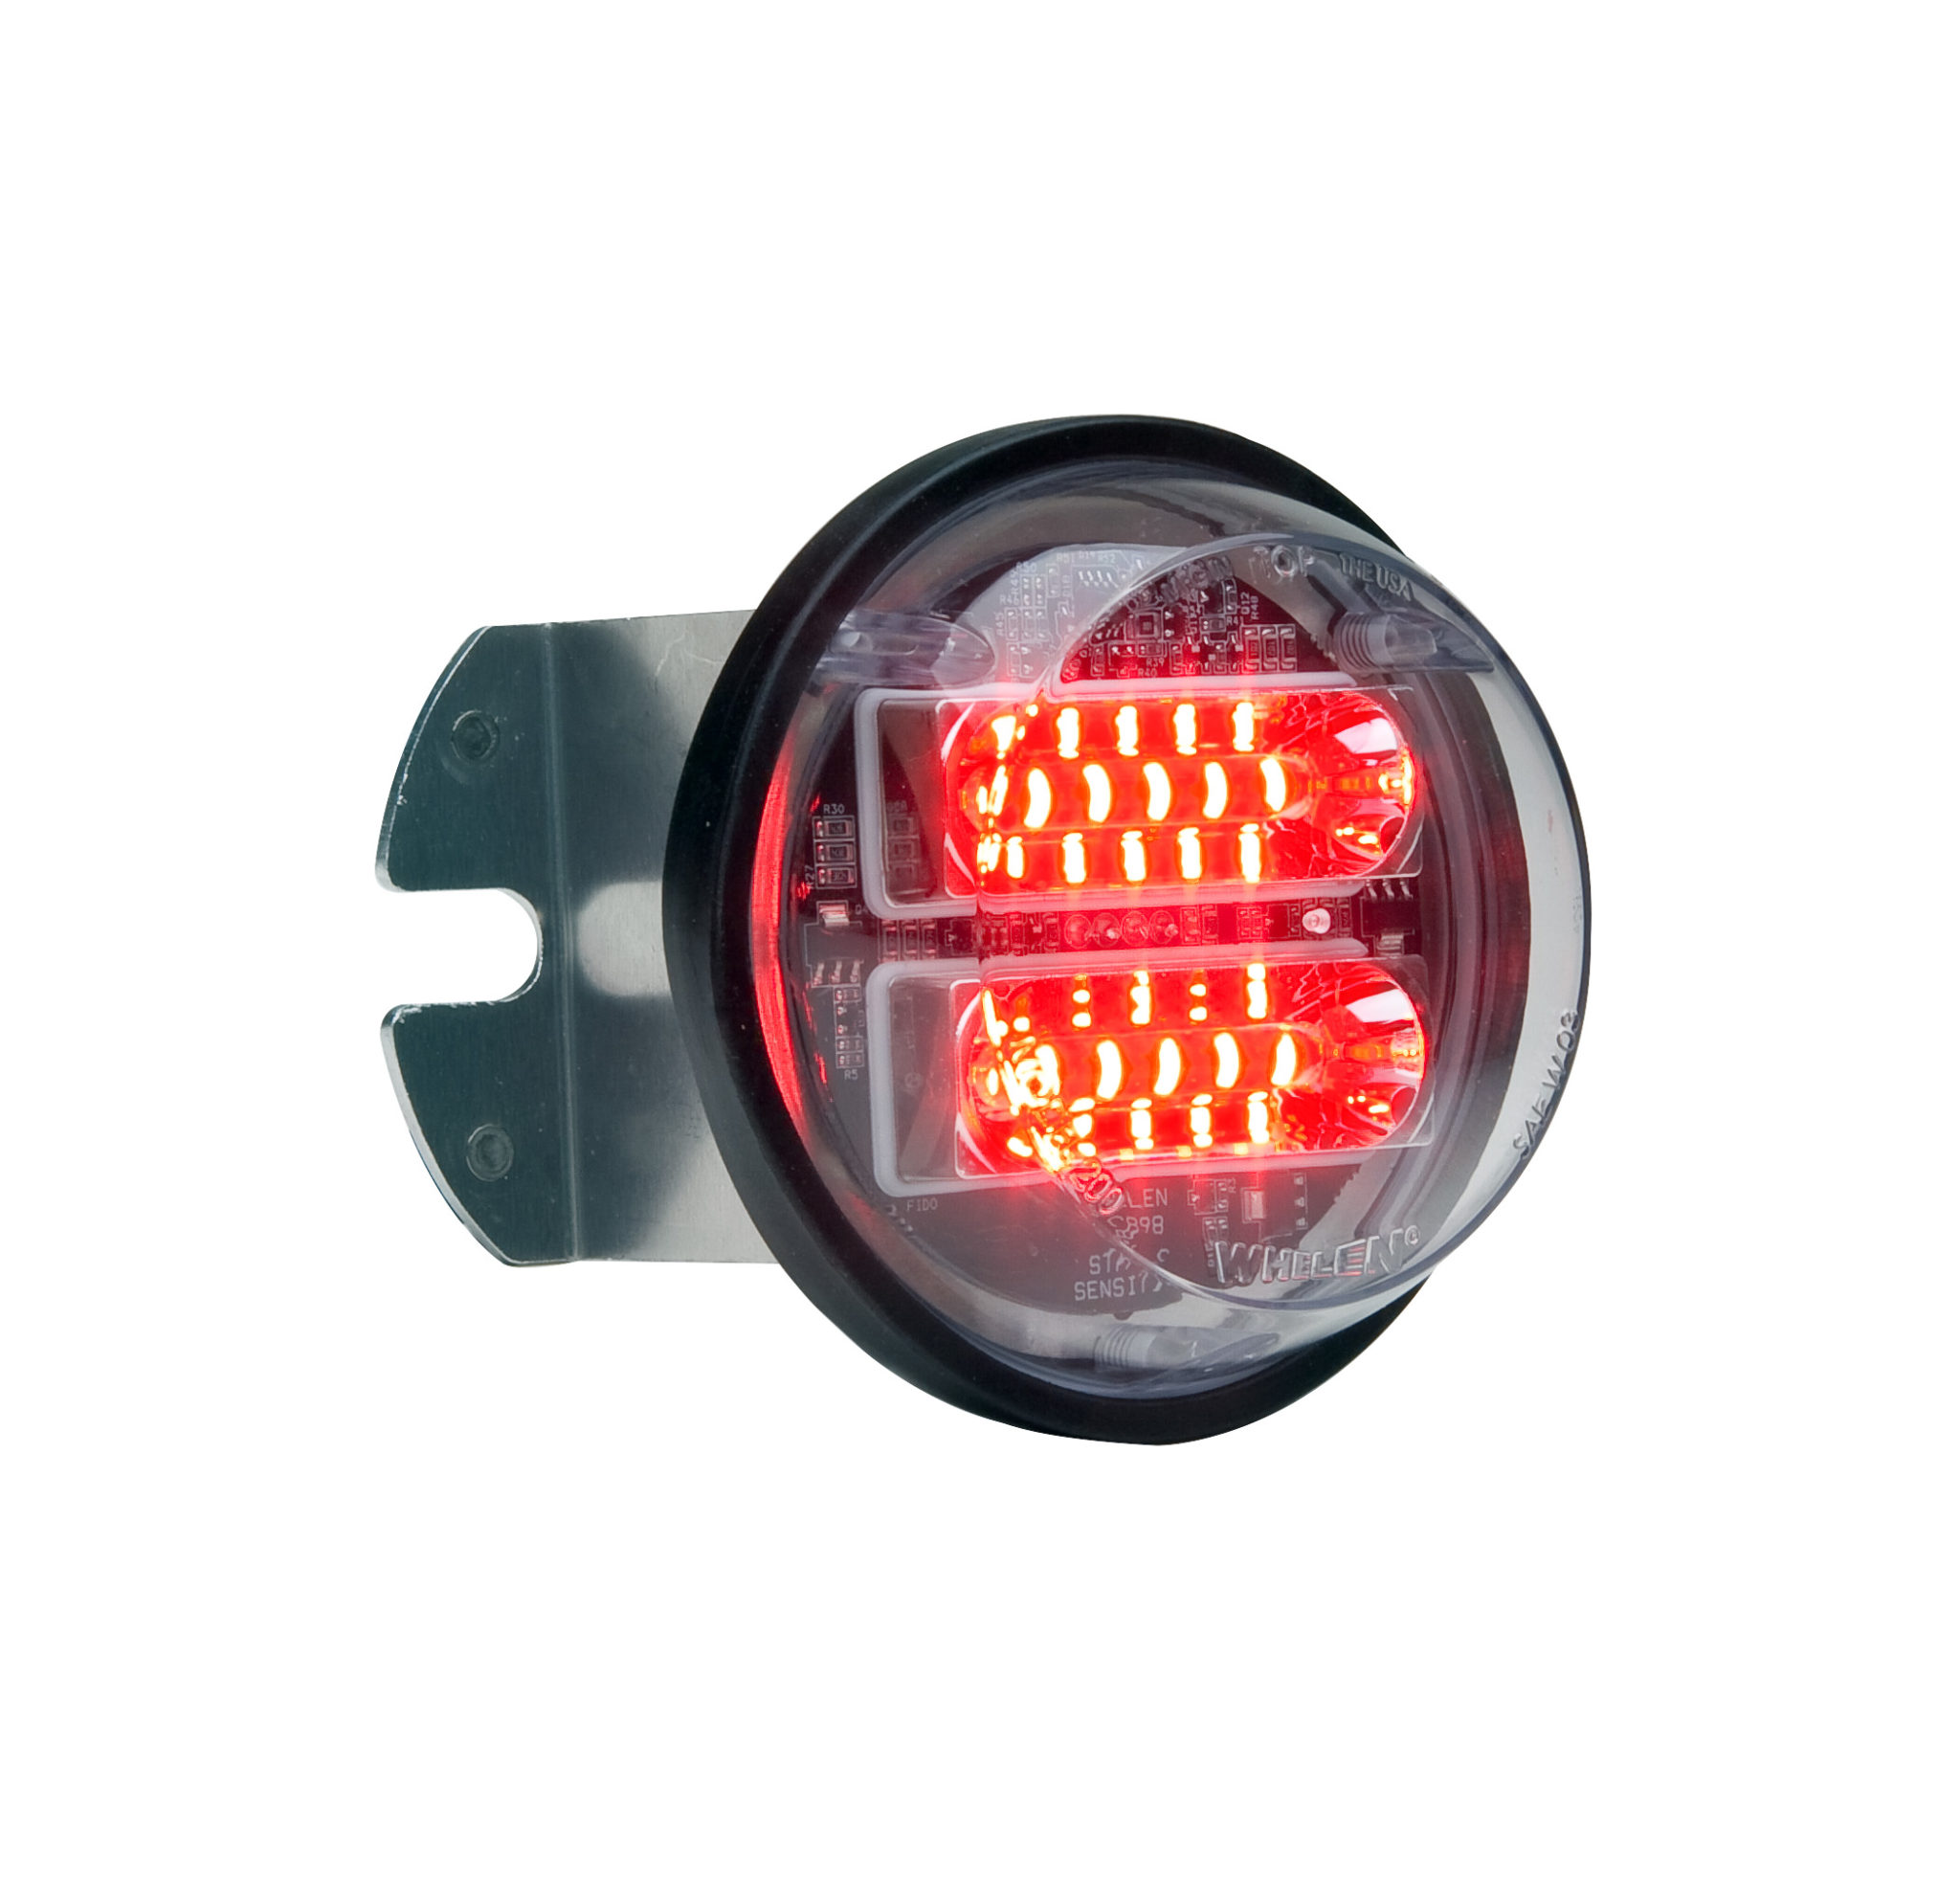 Red/White Whelen Engineering LINZ6 Super-LED Lighthead